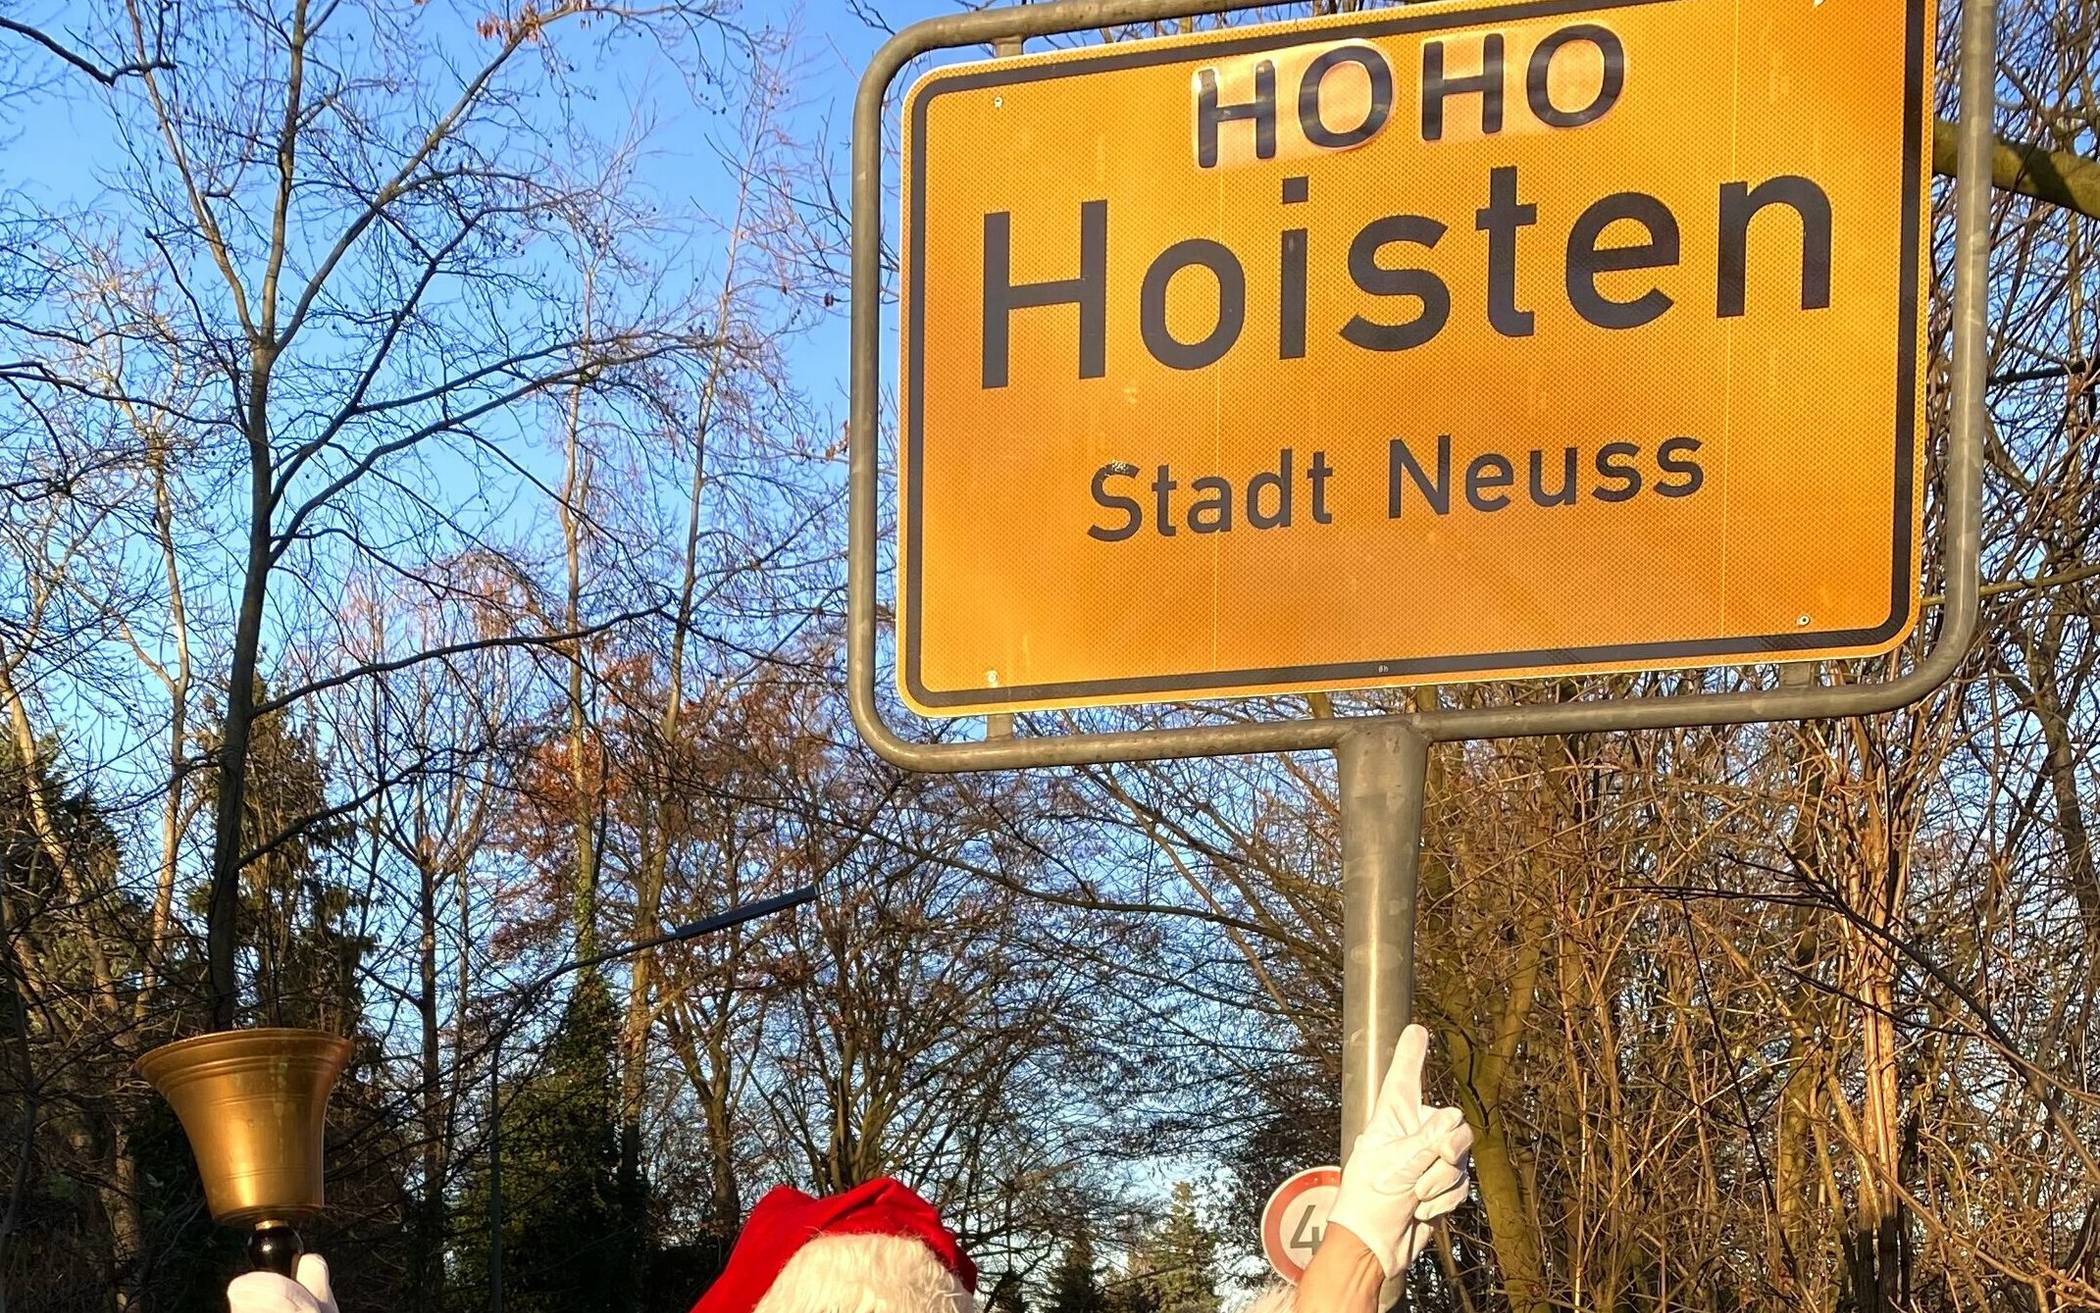 Willkommen in Ho Ho Hoisten!